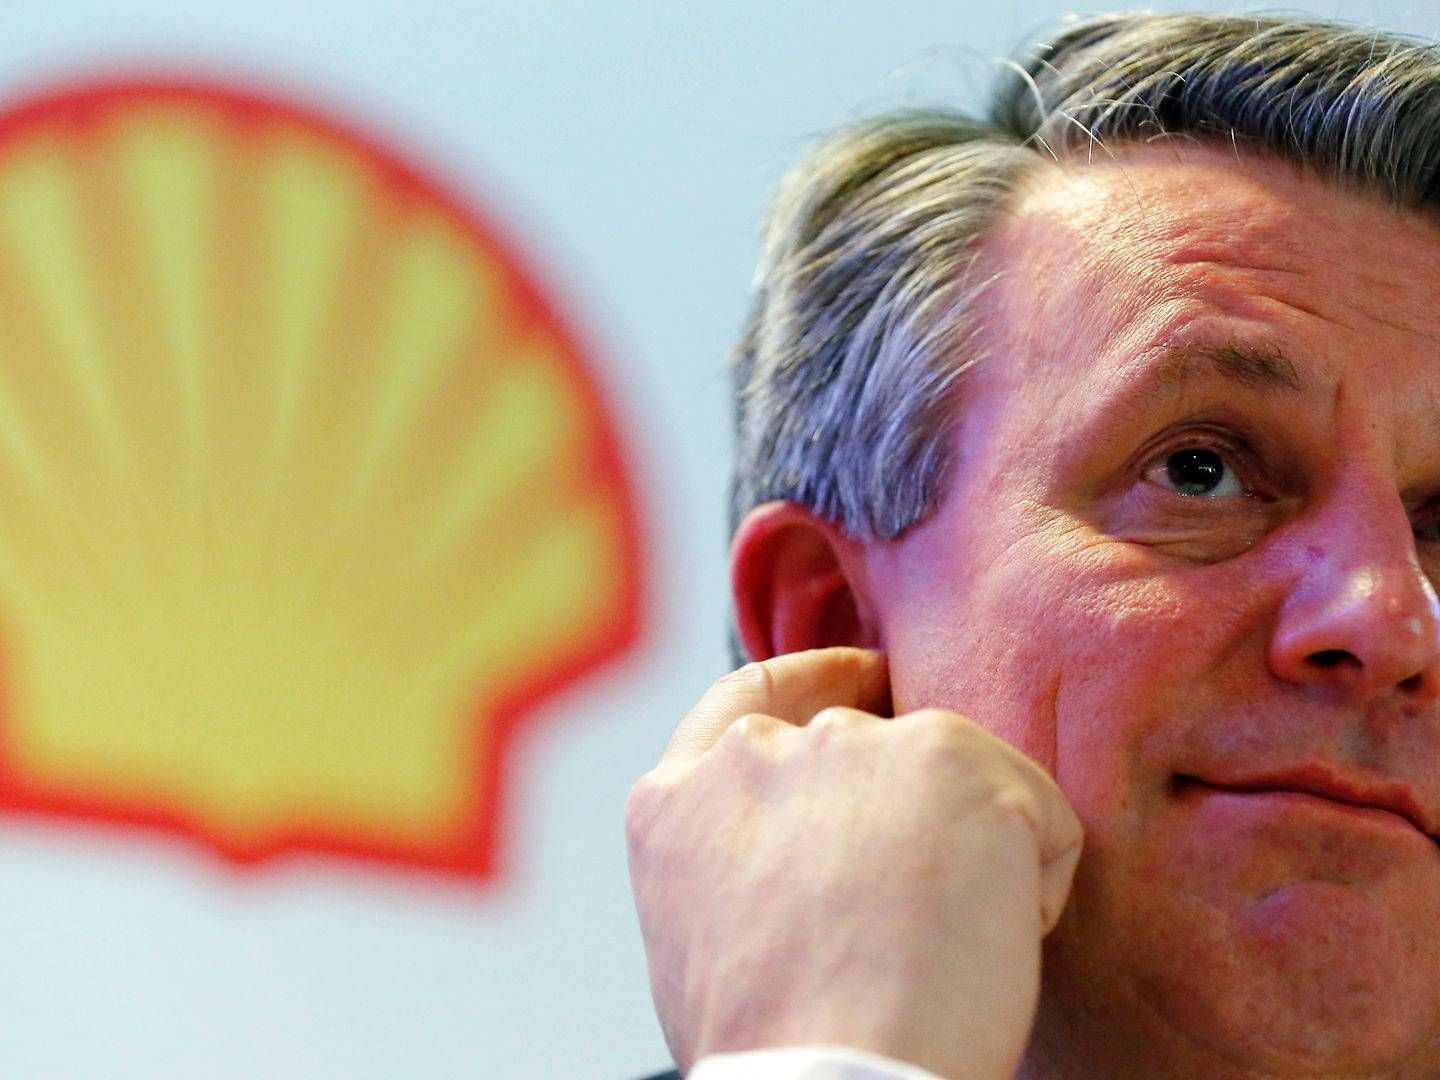 Shells administrerende direktør, Ben van Beurden, glæder sig over indgående pengestrømme til det britisk-hollandske selskab, men må alligevel være skuffet over det seneste kvartalsregnskab. Her lytter han til spørgsmål ved en pressekonference i Brasilien. | Foto: Sergio Moraes / Reuters / Ritzau Scanpix